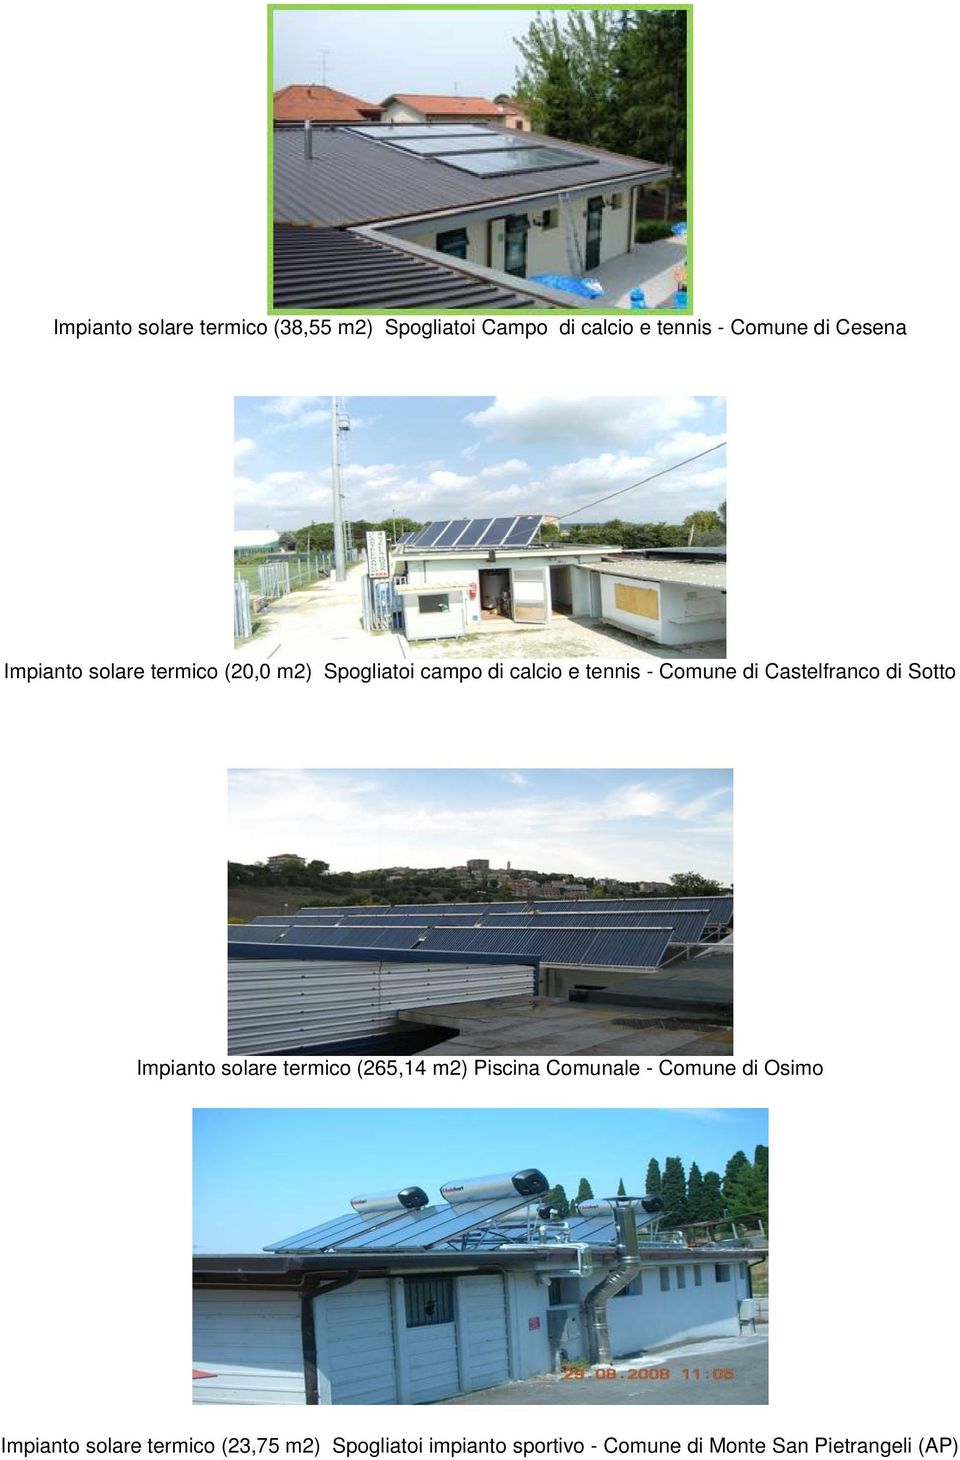 Castelfranco di Sotto Impianto solare termico (265,14 m2) Piscina Comunale - Comune di